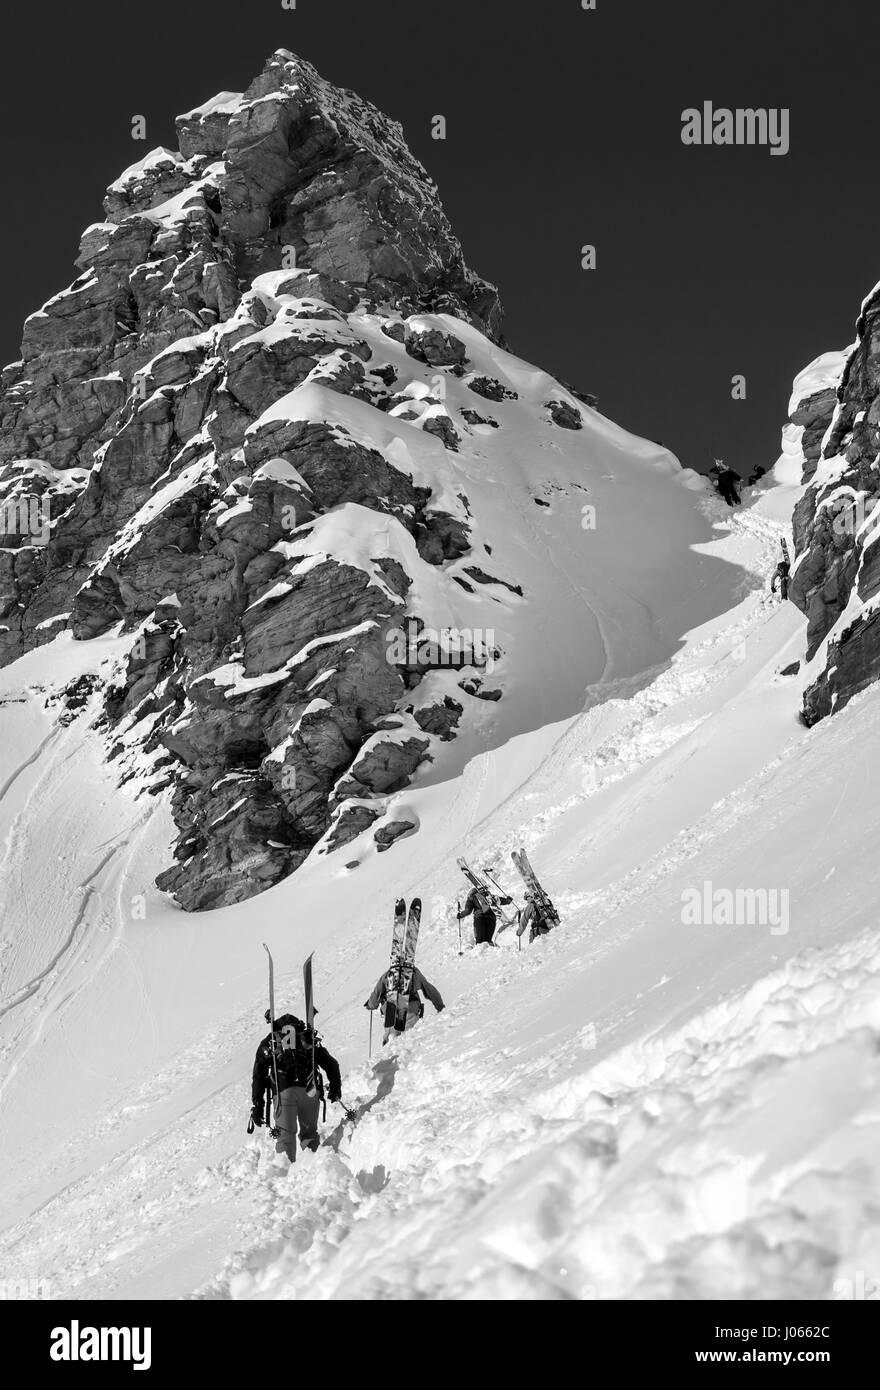 Skiers fight their way up a mountain in the Sportgastein ski region, Austria. Stock Photo